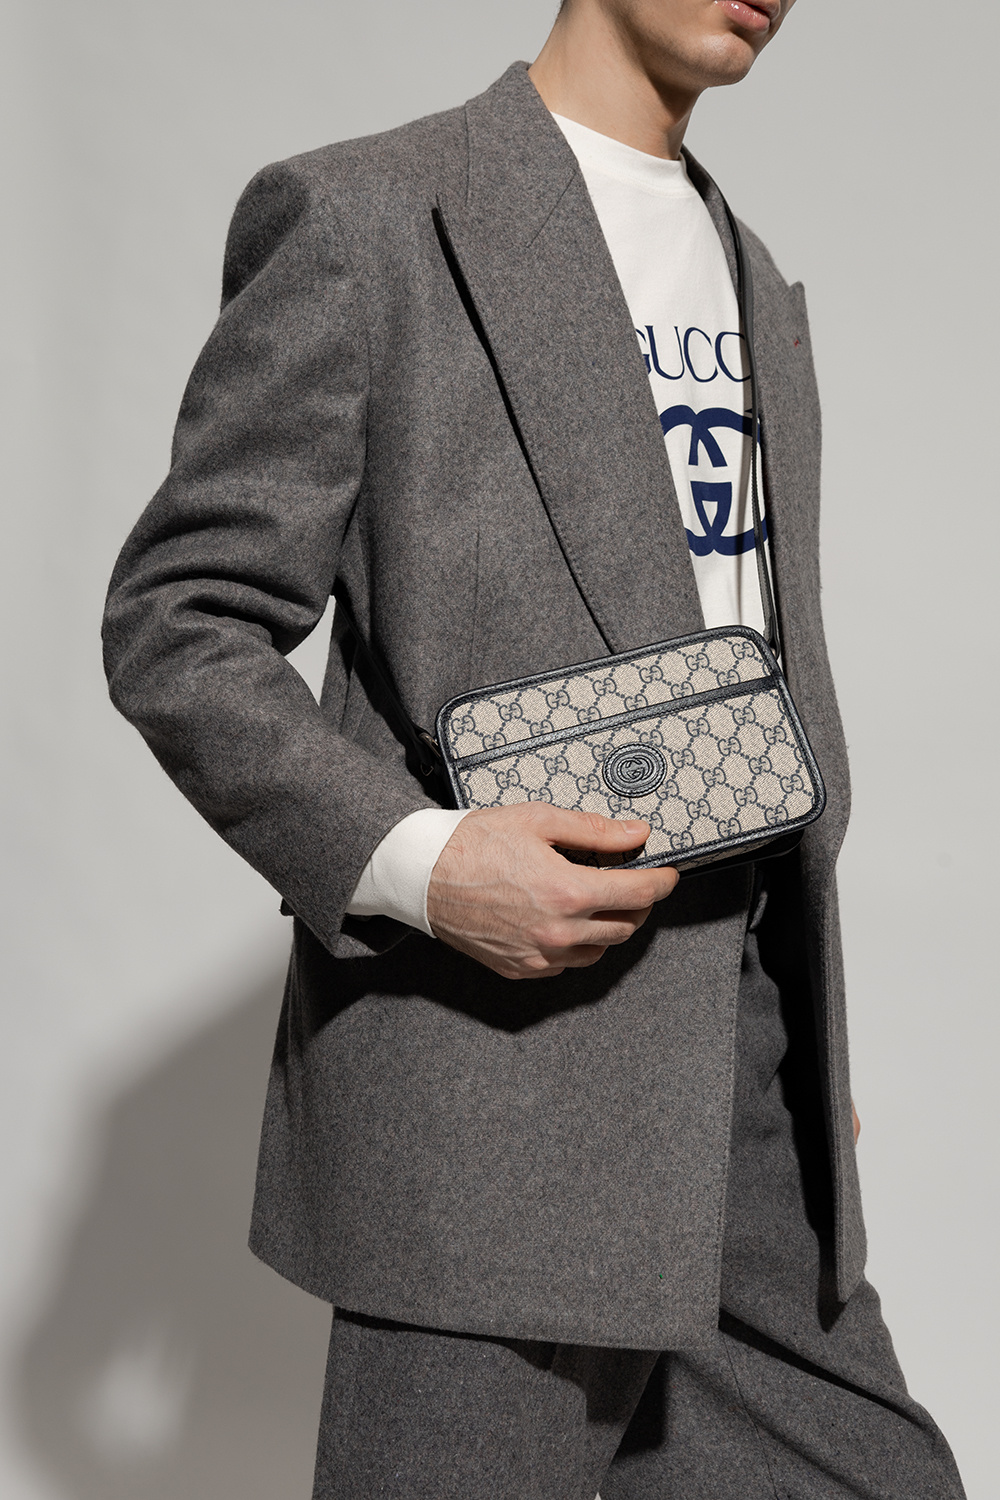 StclaircomoShops, Gucci Monogrammed shoulder bag, Men's Bags